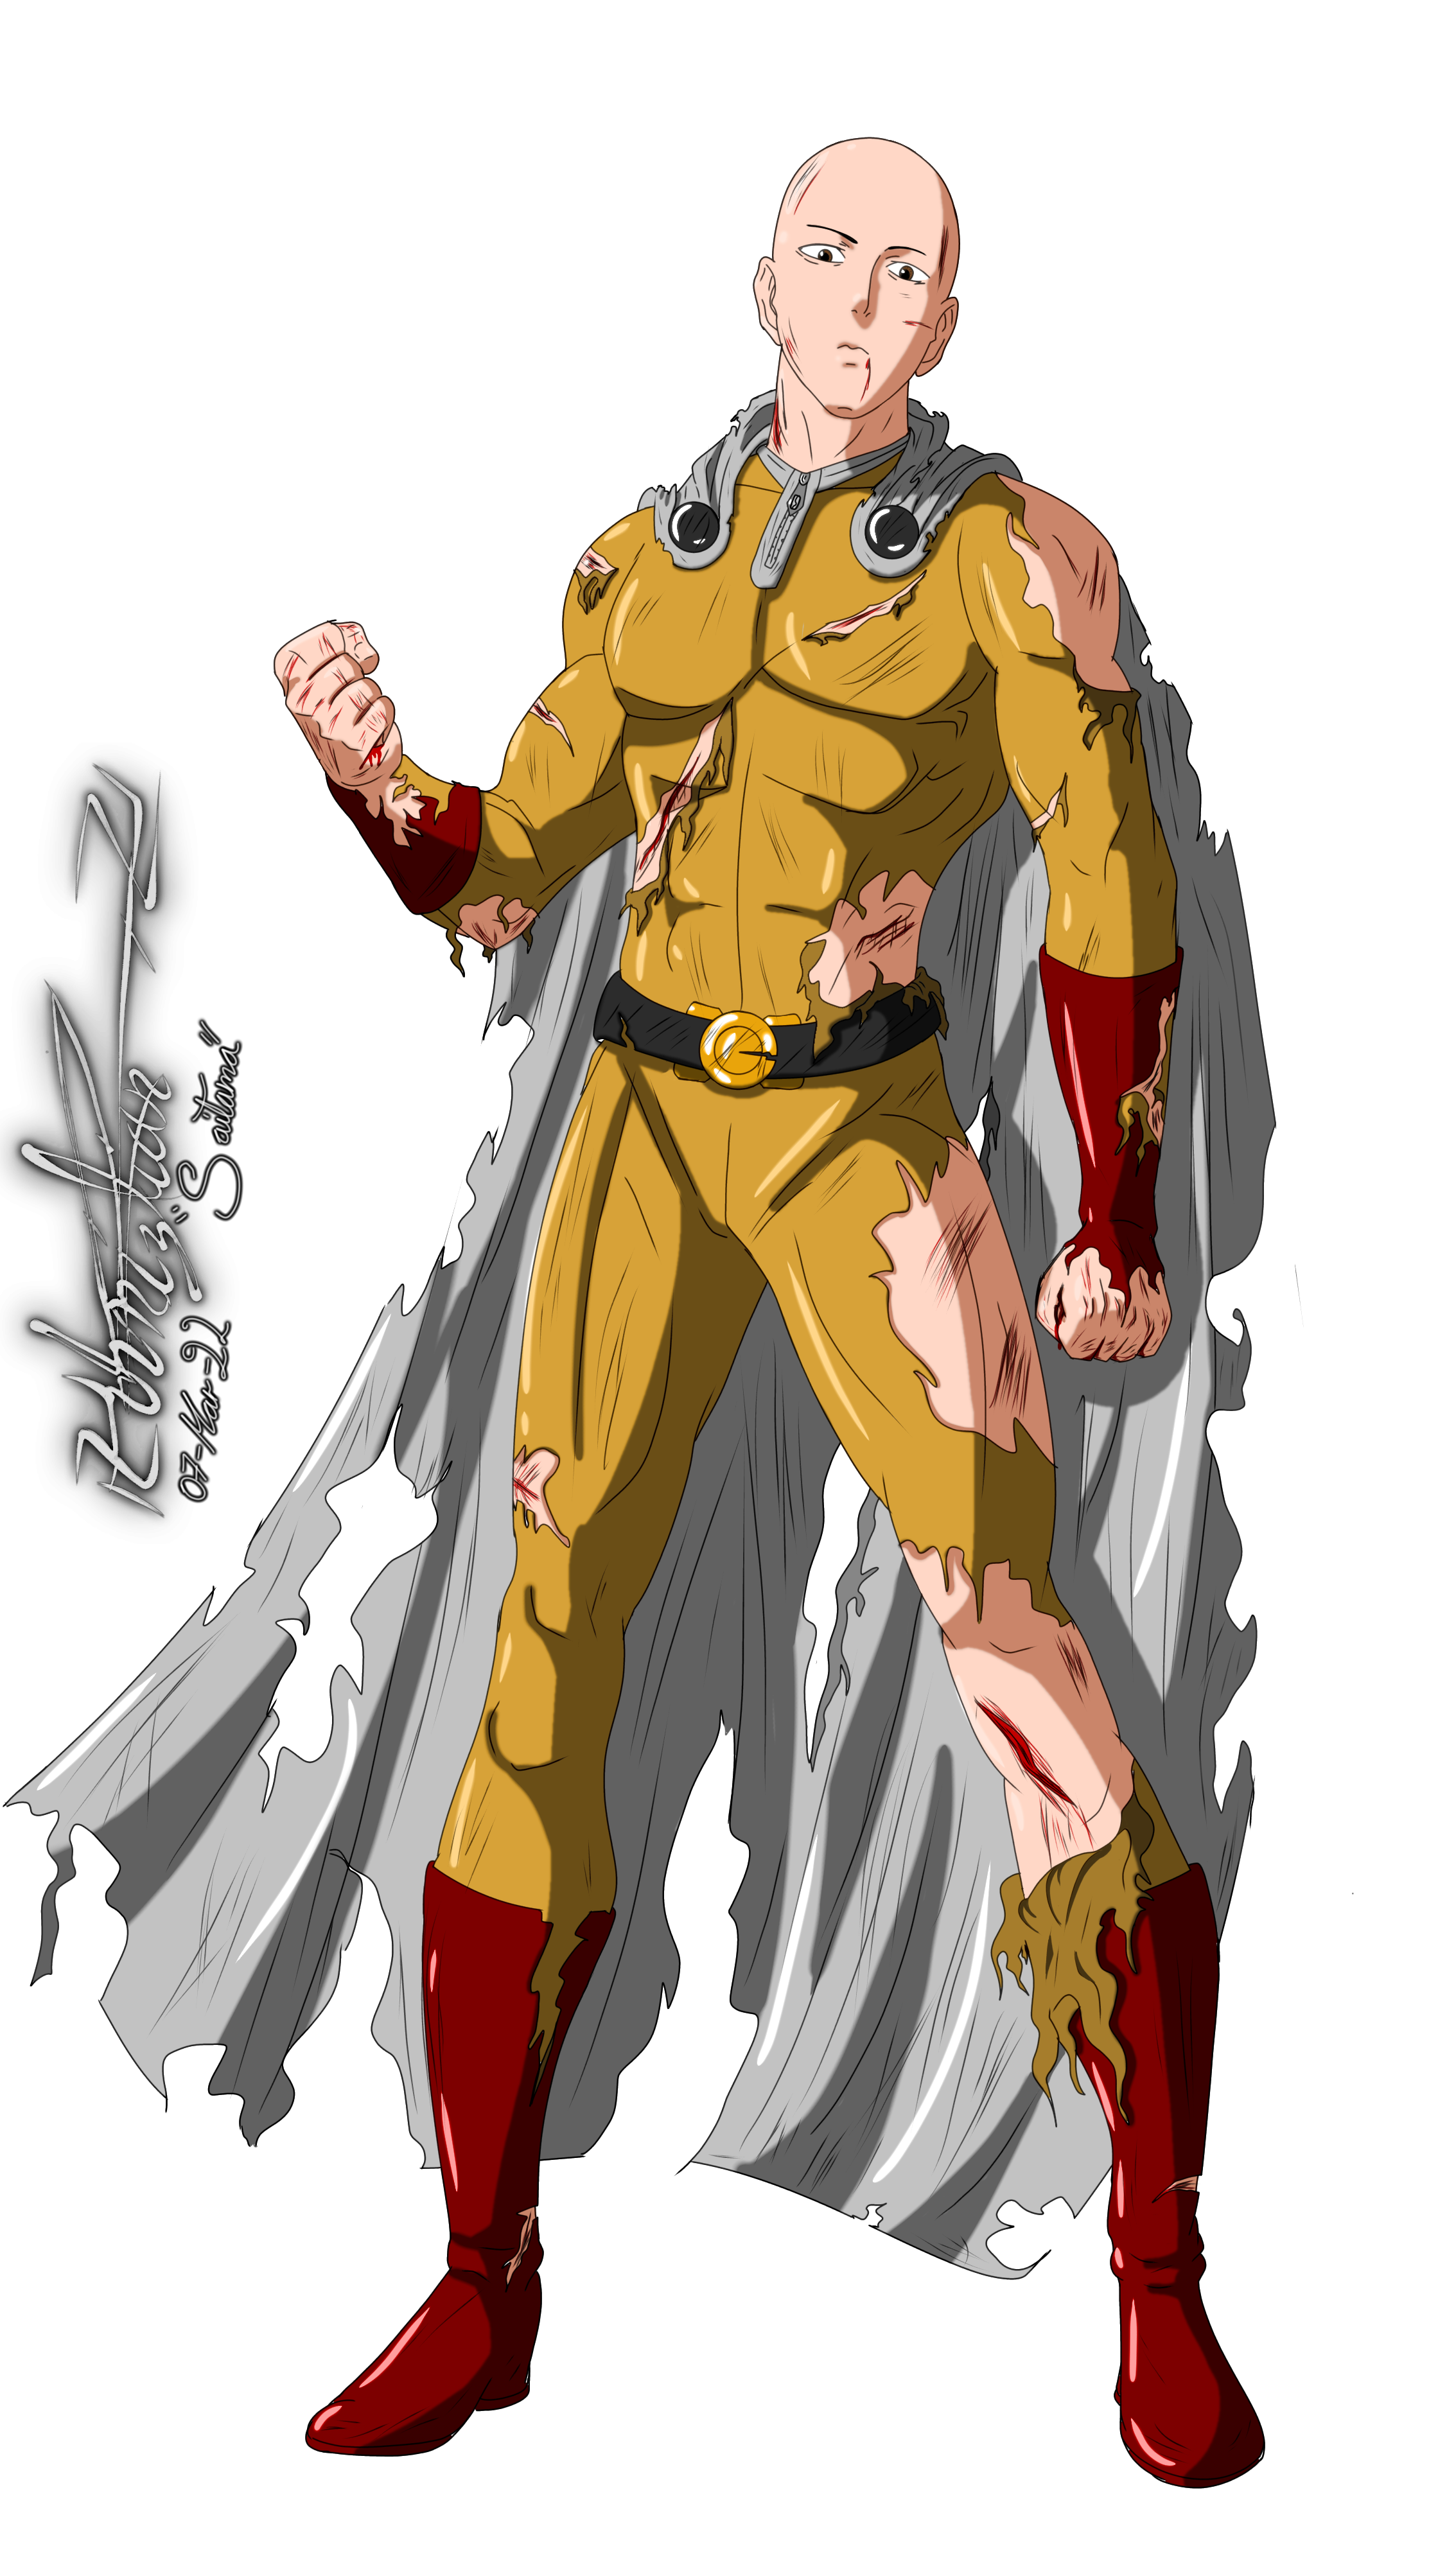 One Punch Man: Orden completo para ver el anime de Saitama